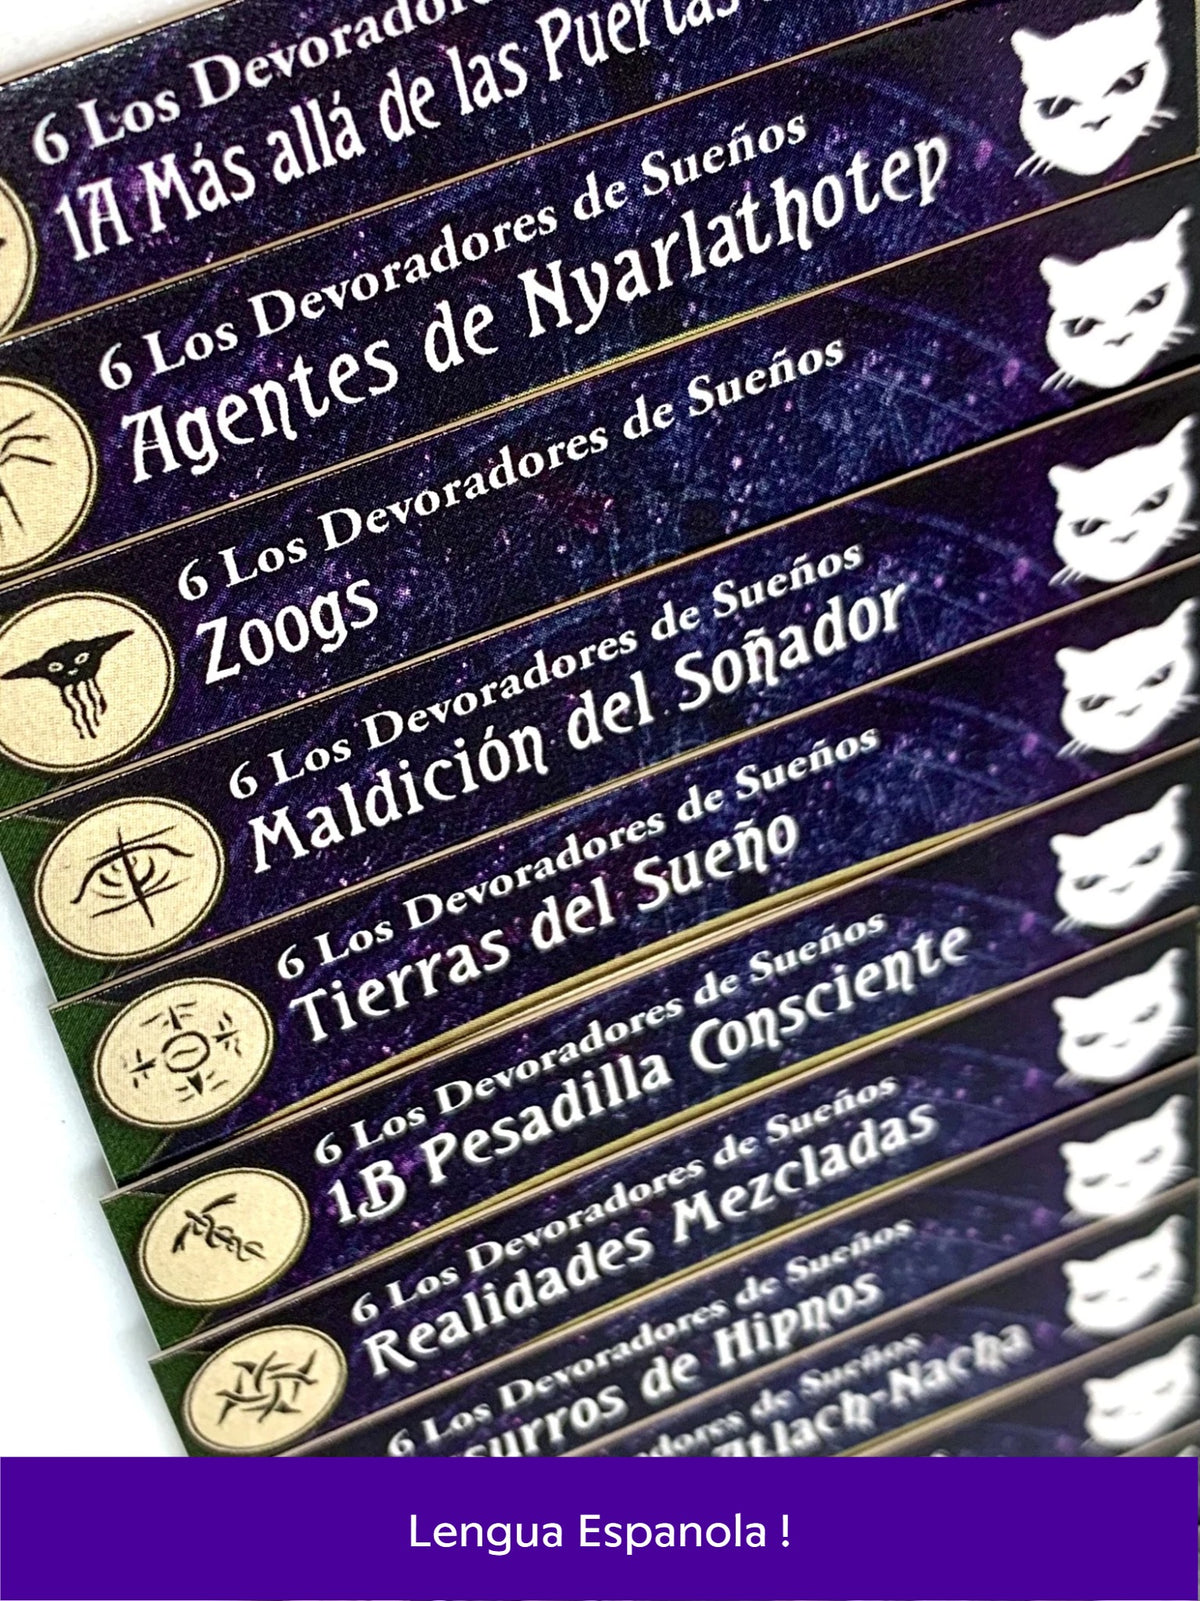 Los Devoradores de Sueños Arkham Horror: El juego de cartas Separadores Española!